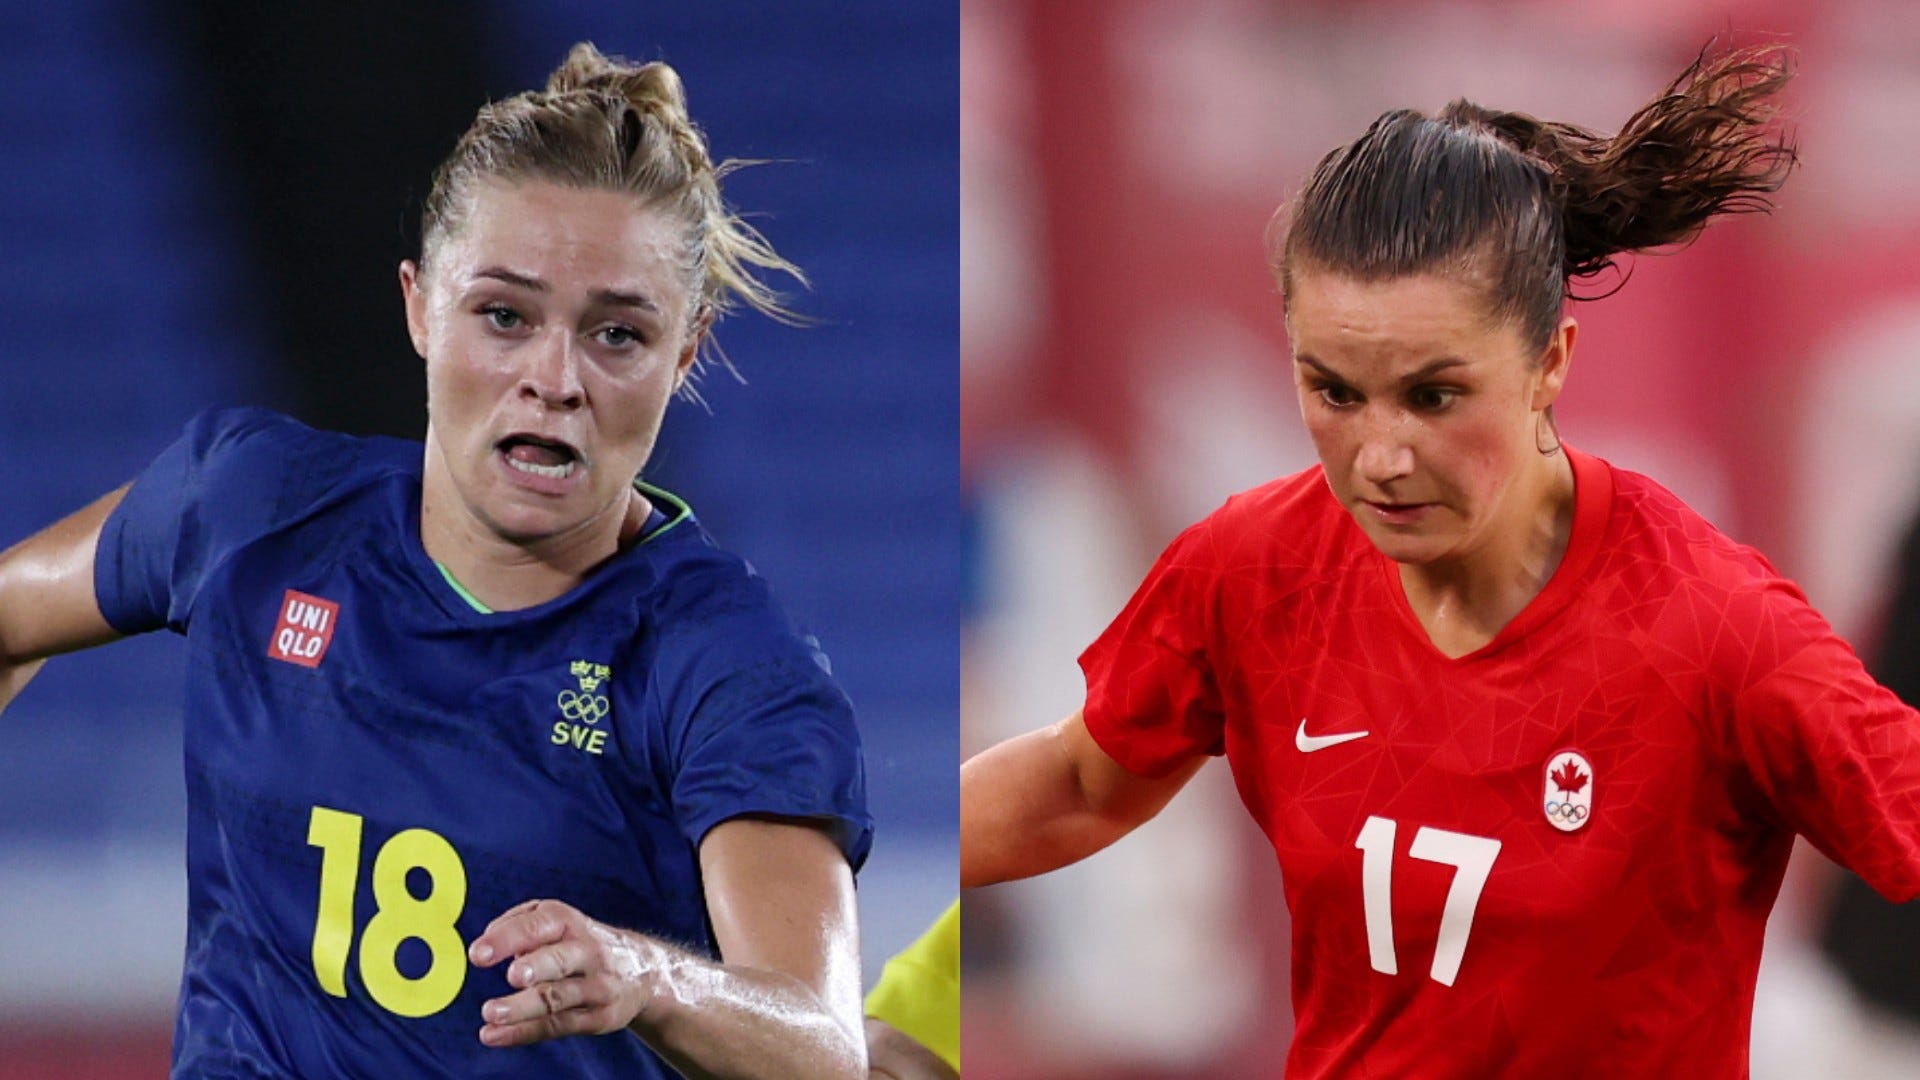 8月6日テレビ放送 女子サッカー決勝 スウェーデンvsカナダの地上波tv中継予定 Goal Com 日本